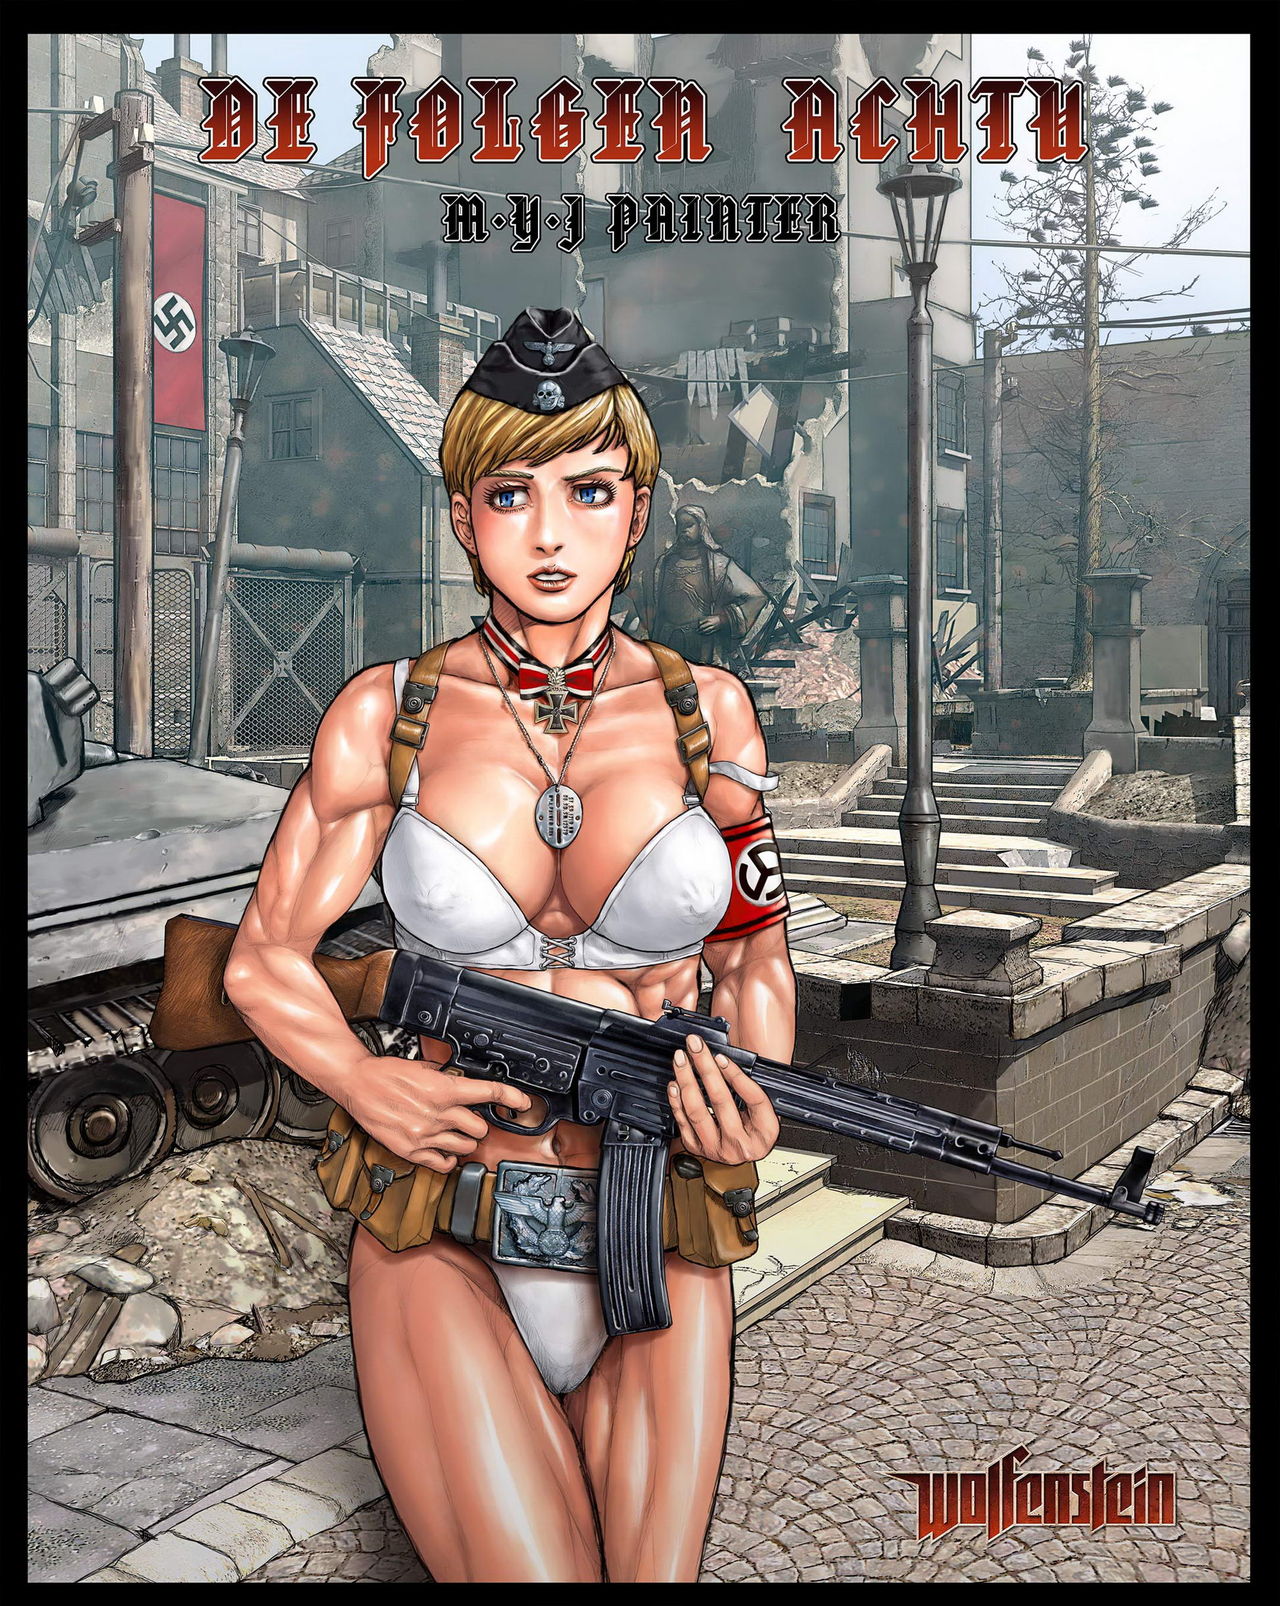 Nazi girl with STG-44 & bondage - Page 9 - HentaiEra